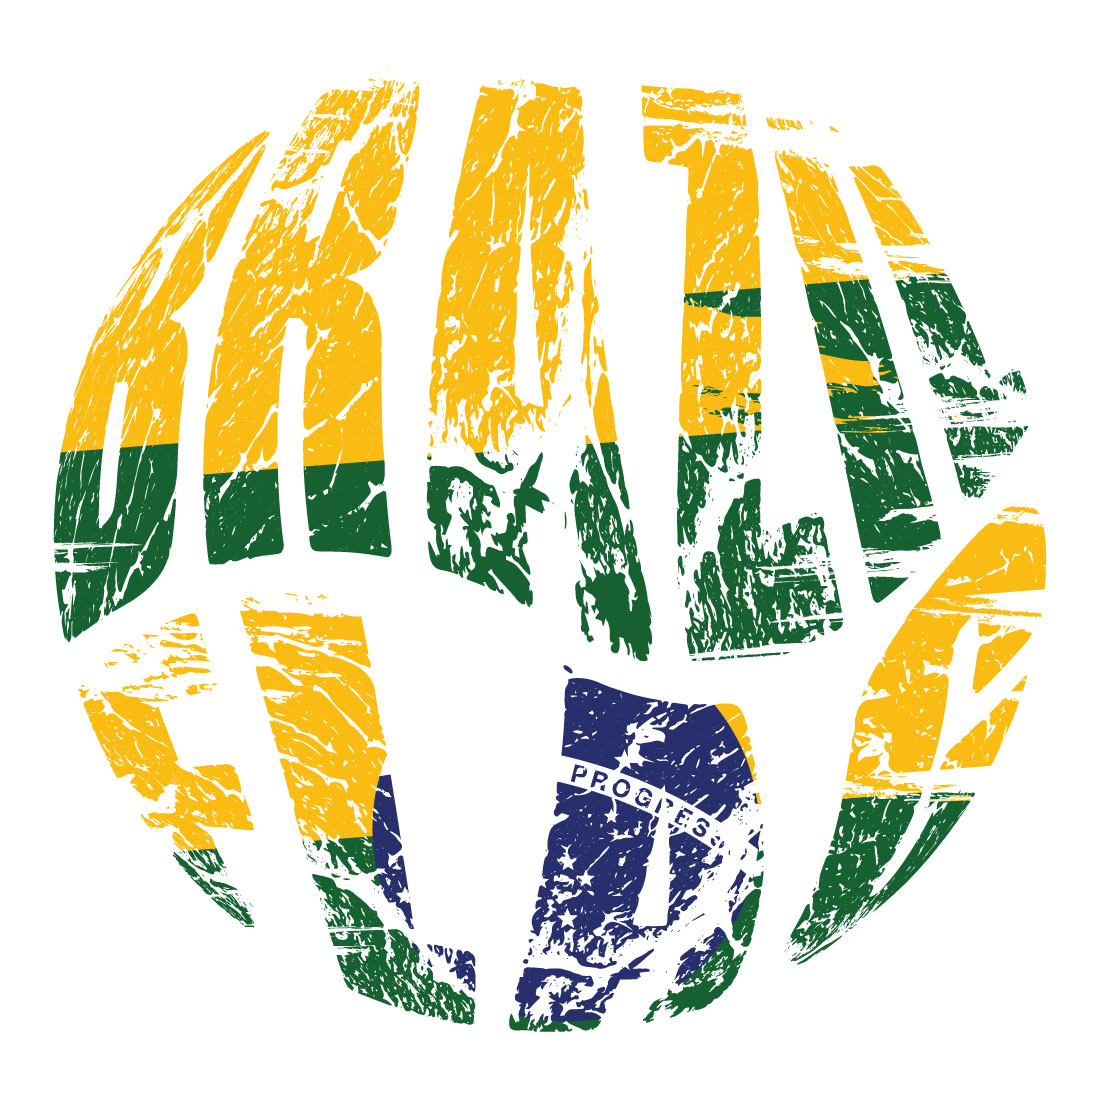 Ball Brazil Flag T-shirt Design cover image.